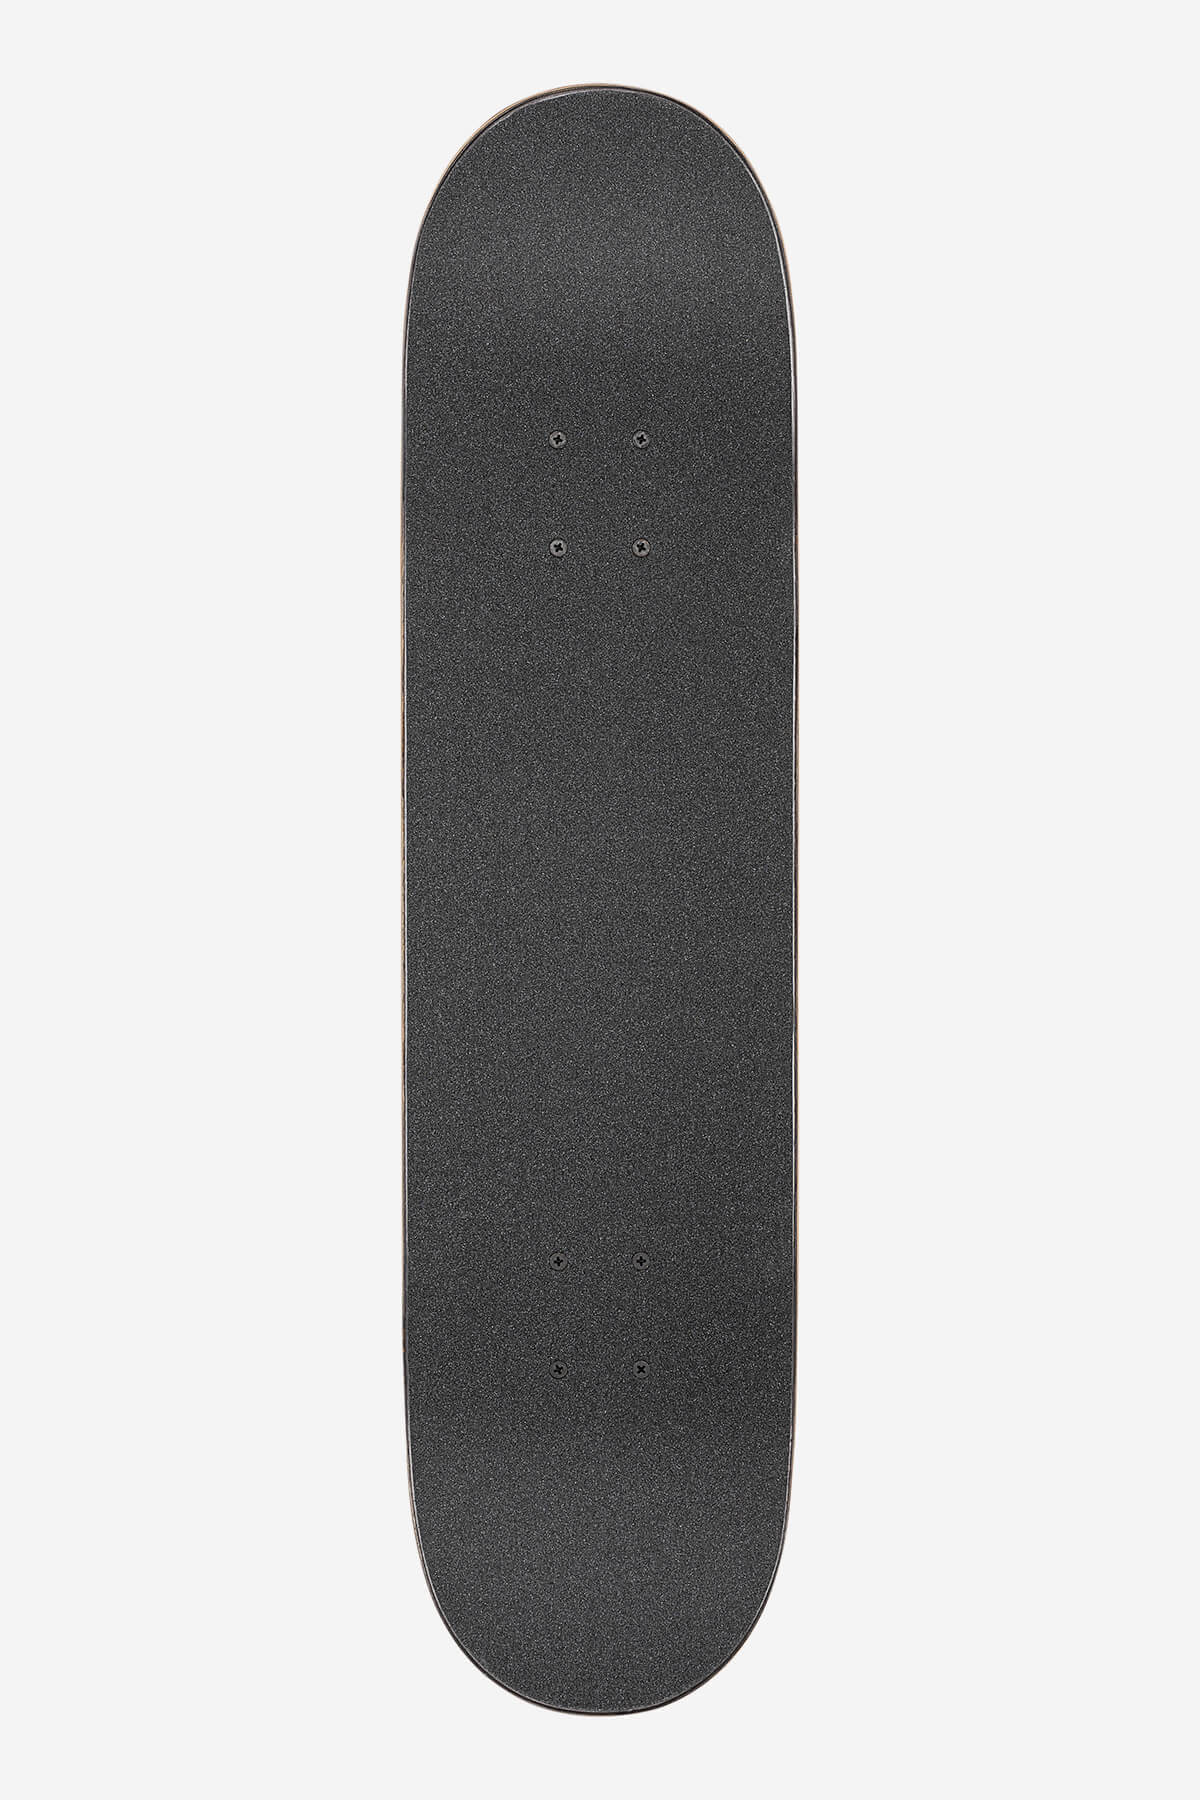 Globe - G1 Ablaze - Tie Dye - 7.75" Complet Skateboard